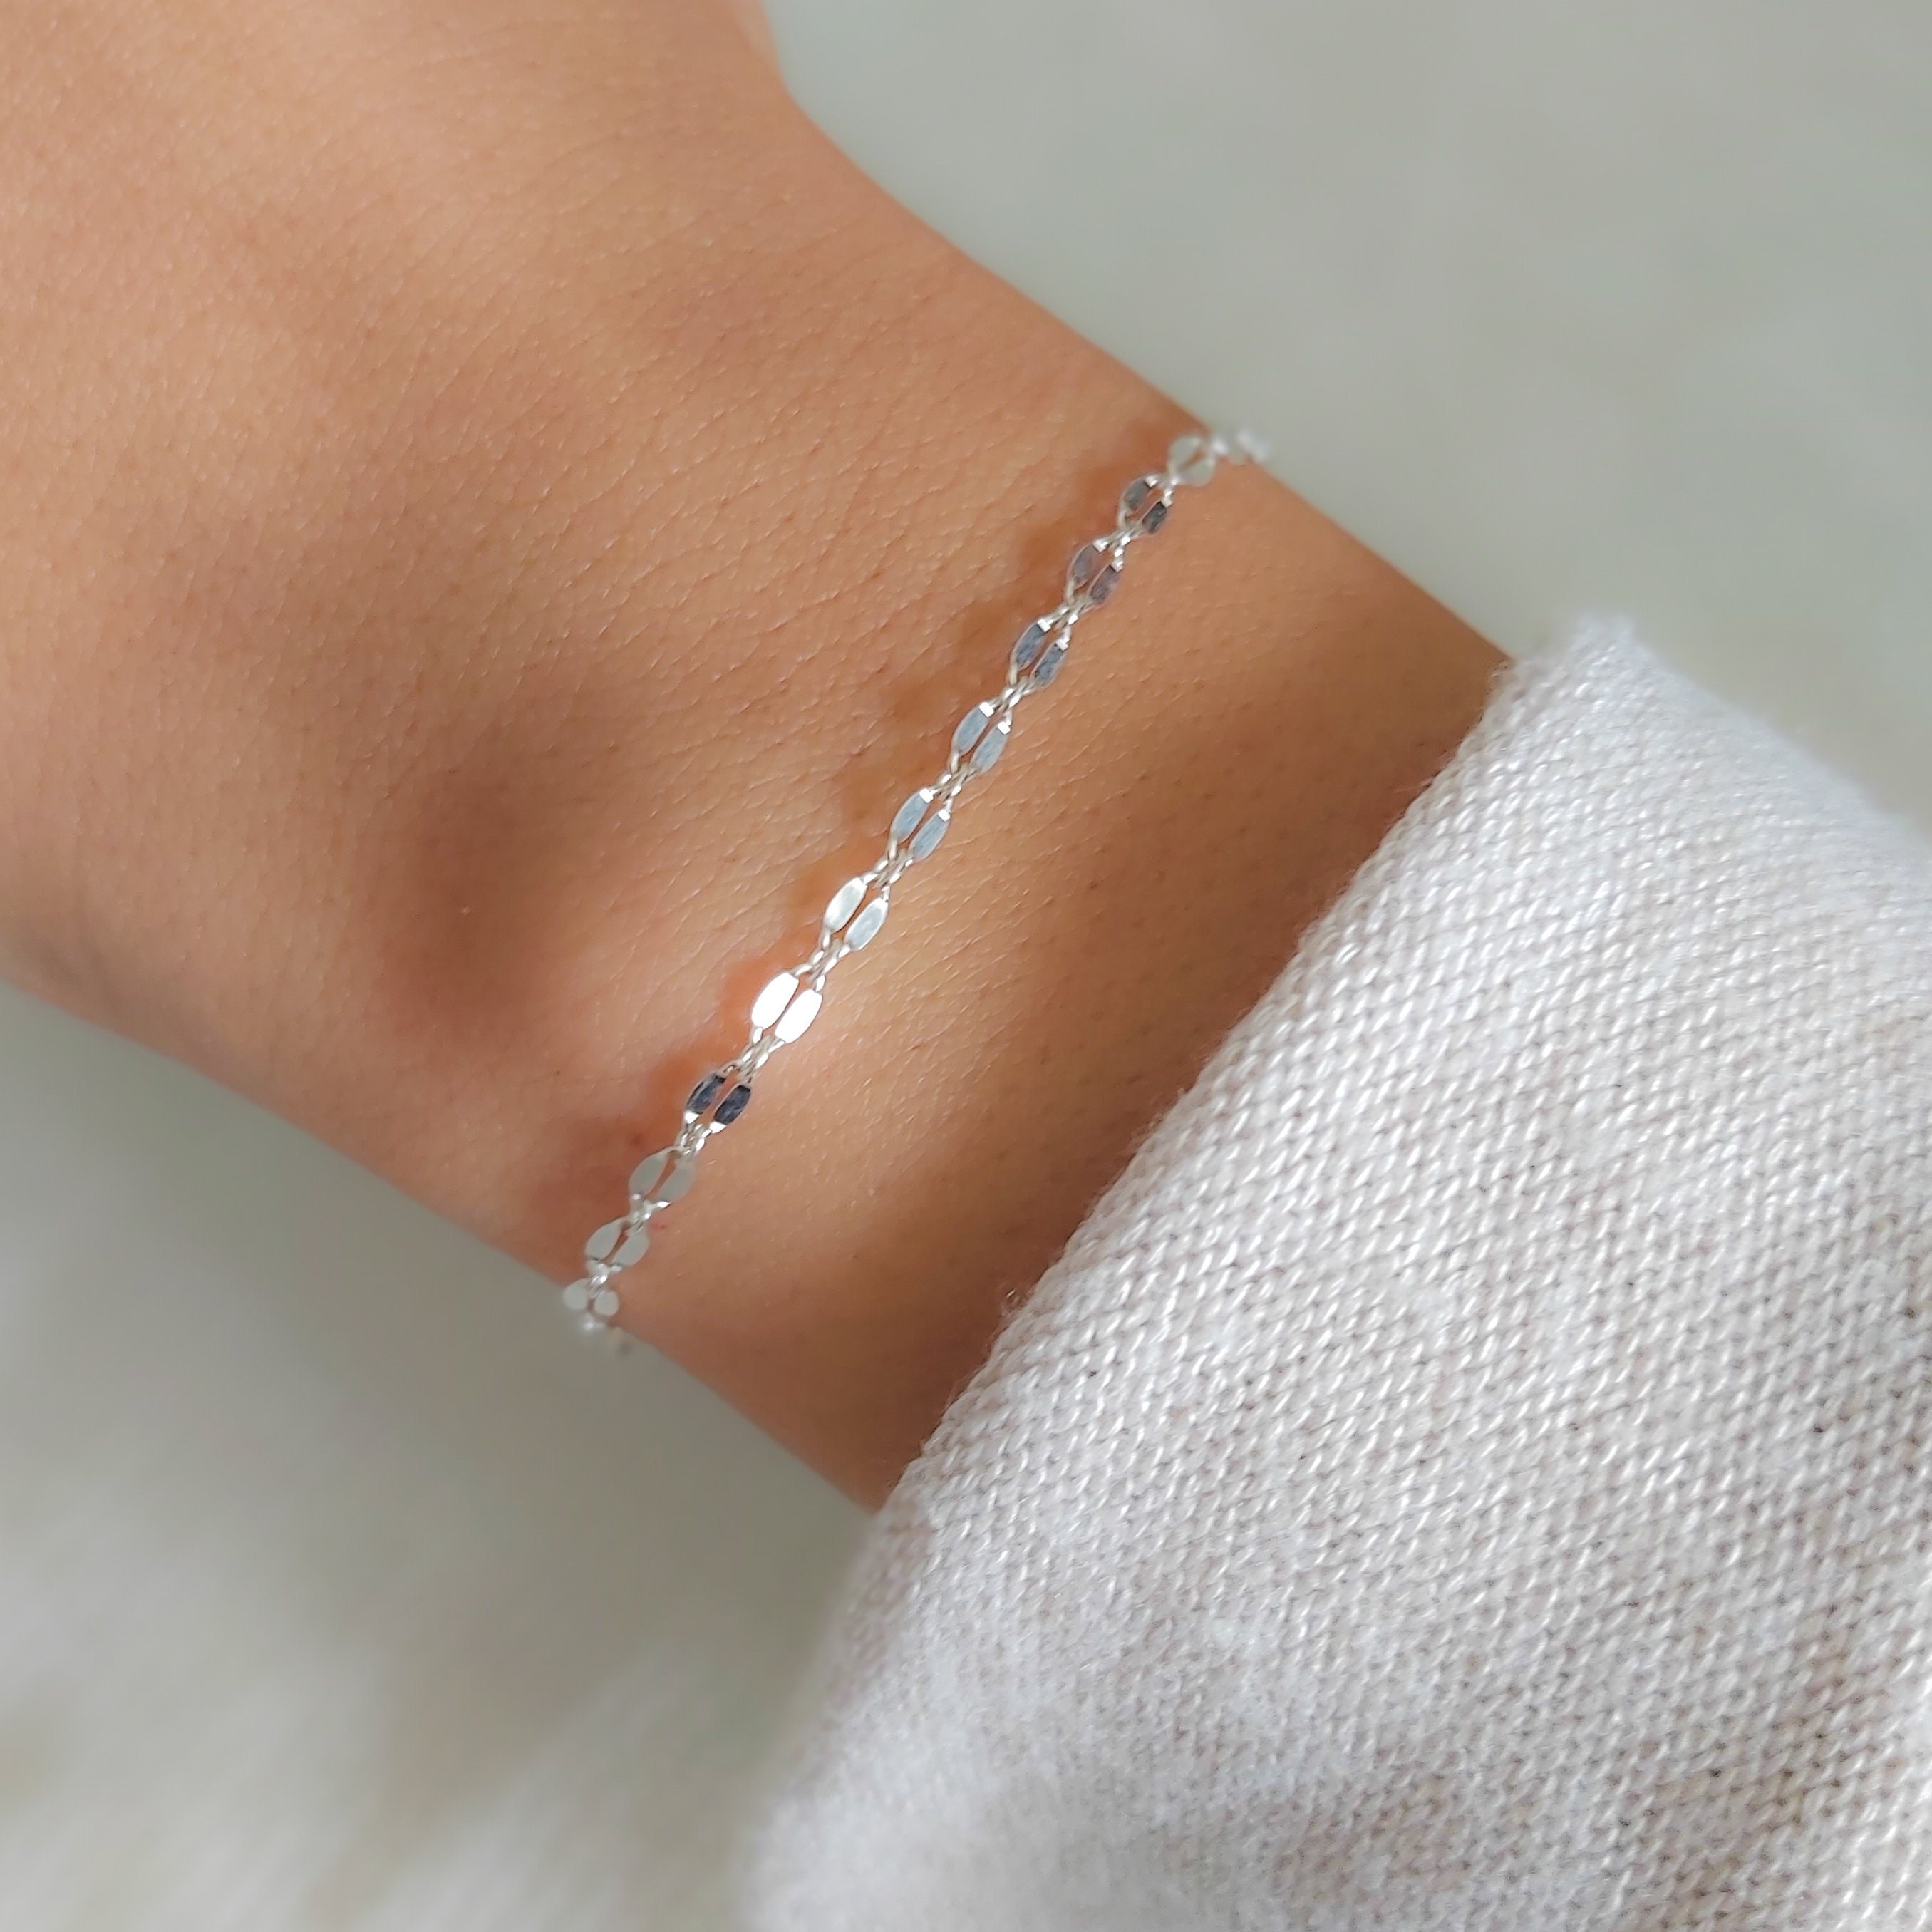 Alloy Beads Sterling Silver Bangle Bracelet For Girls & Women